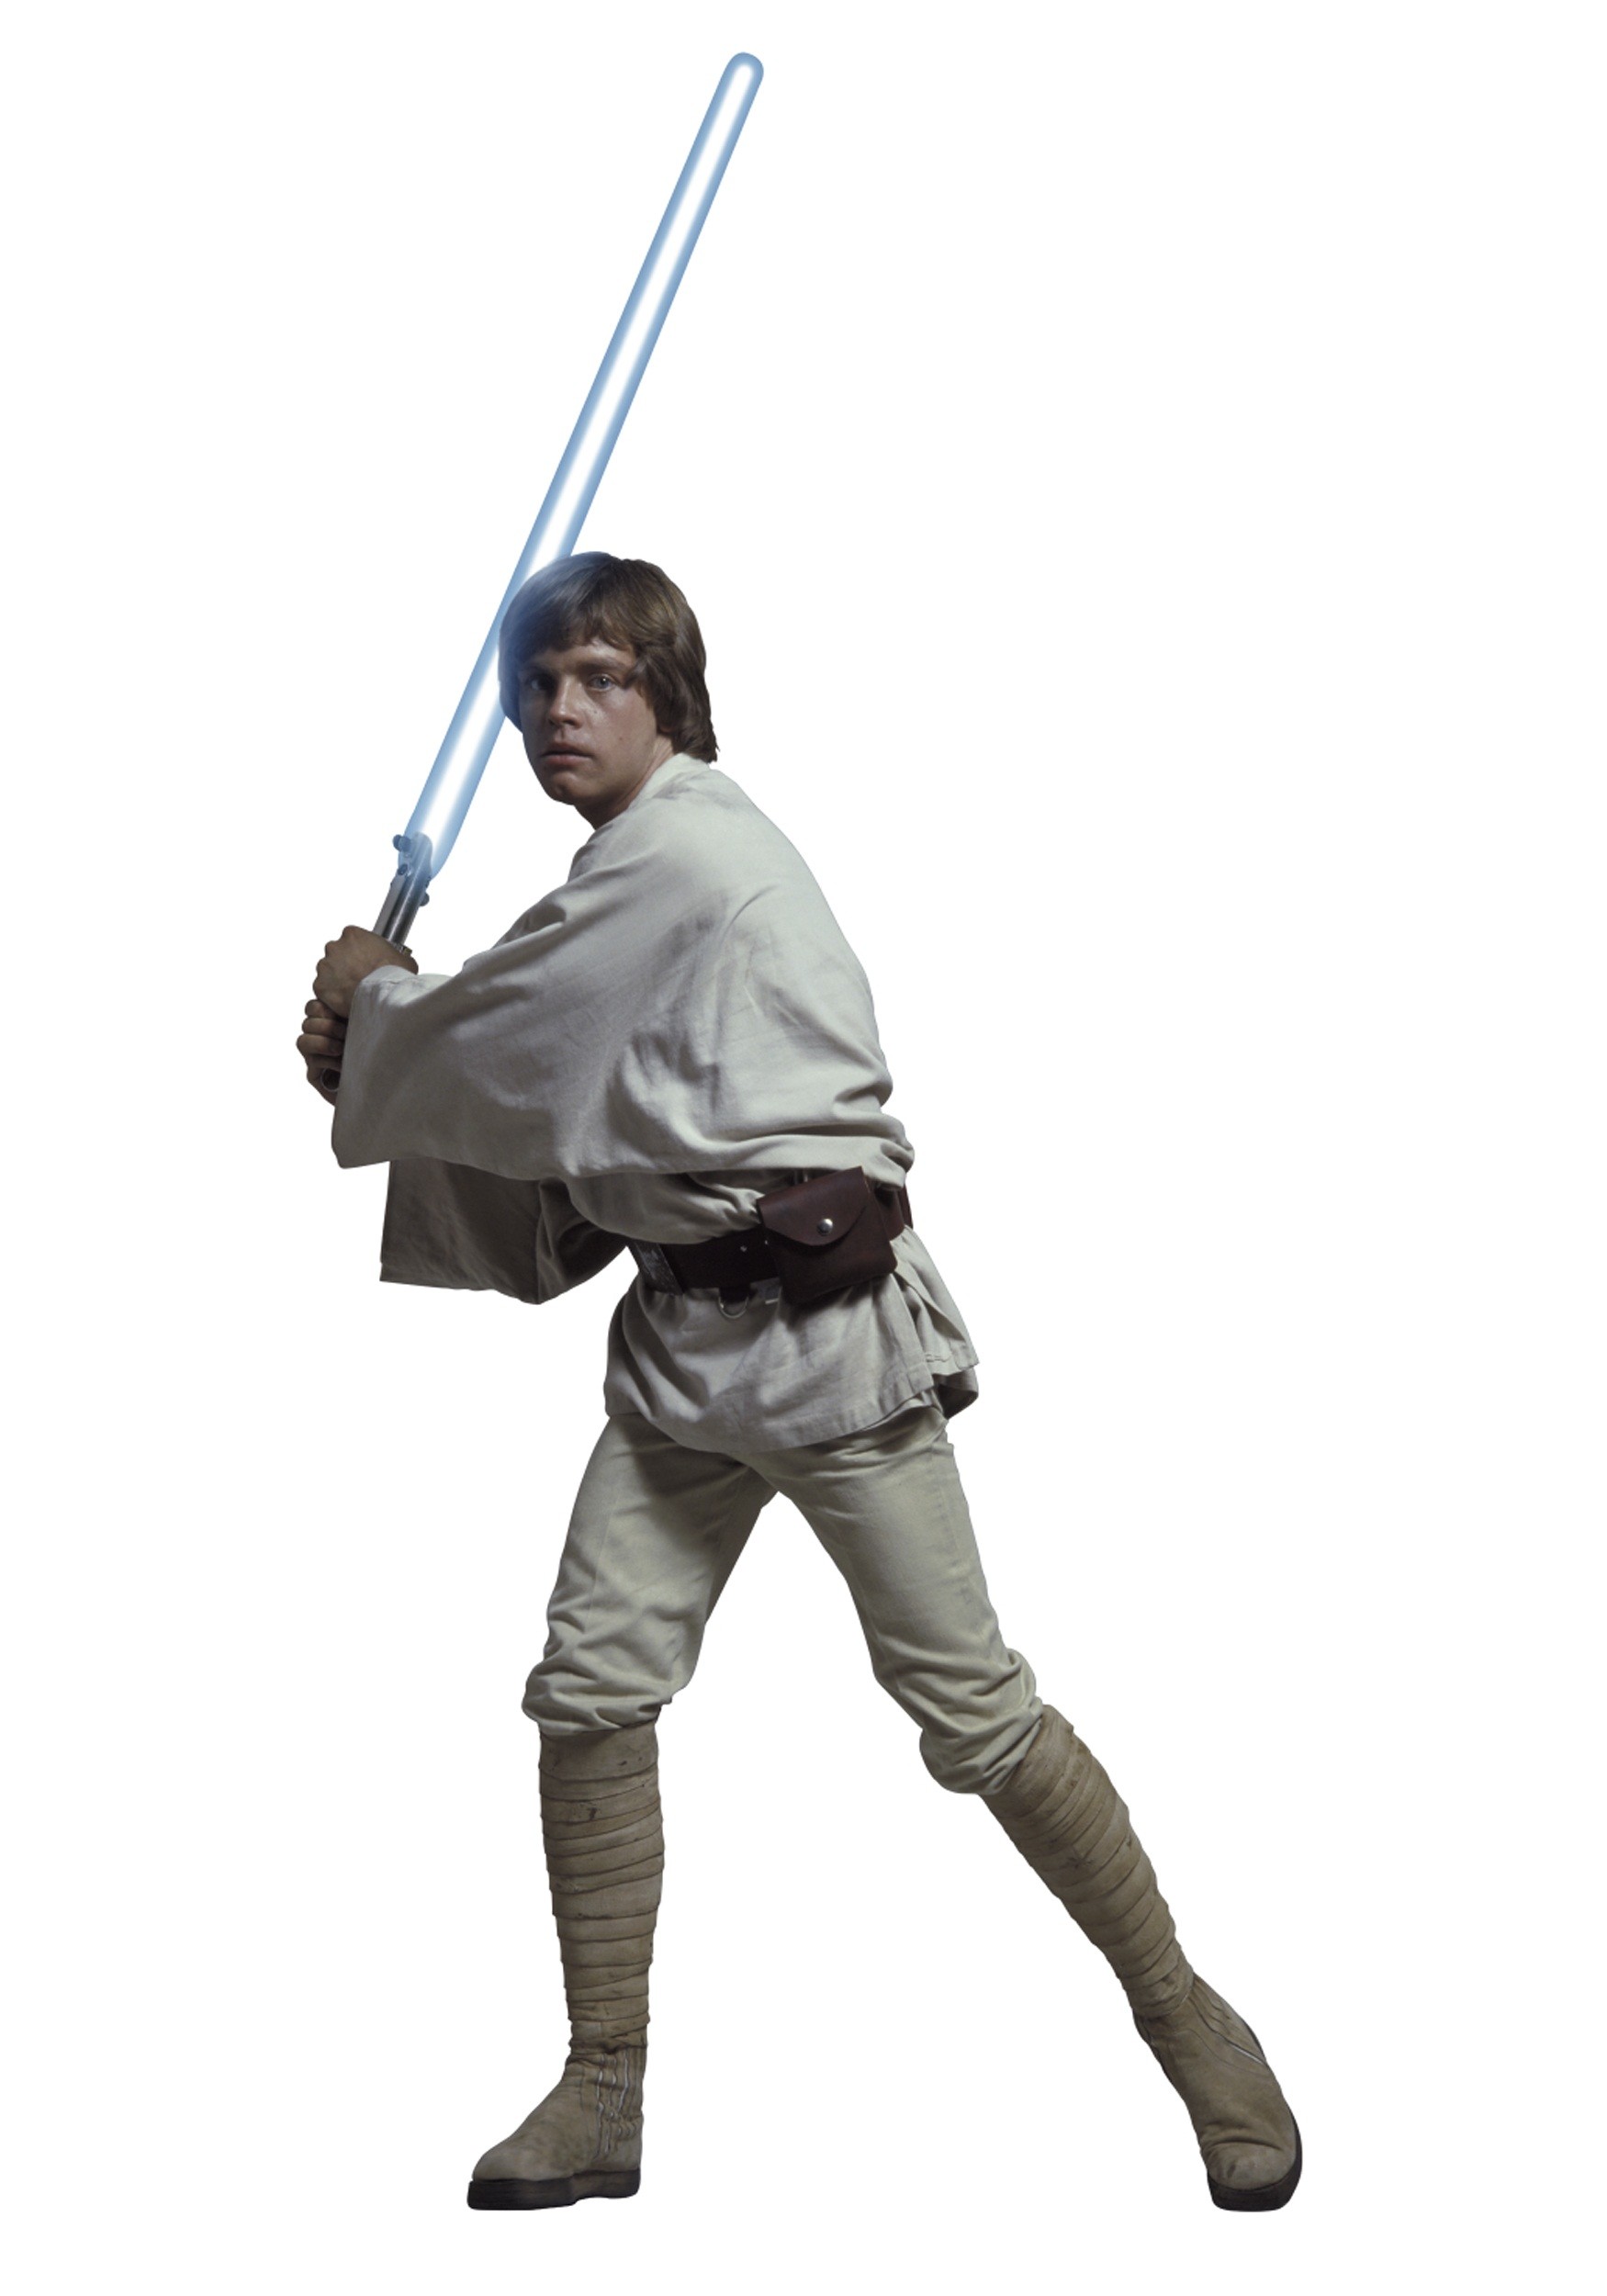 Luke Skywalker Wallpaper Images